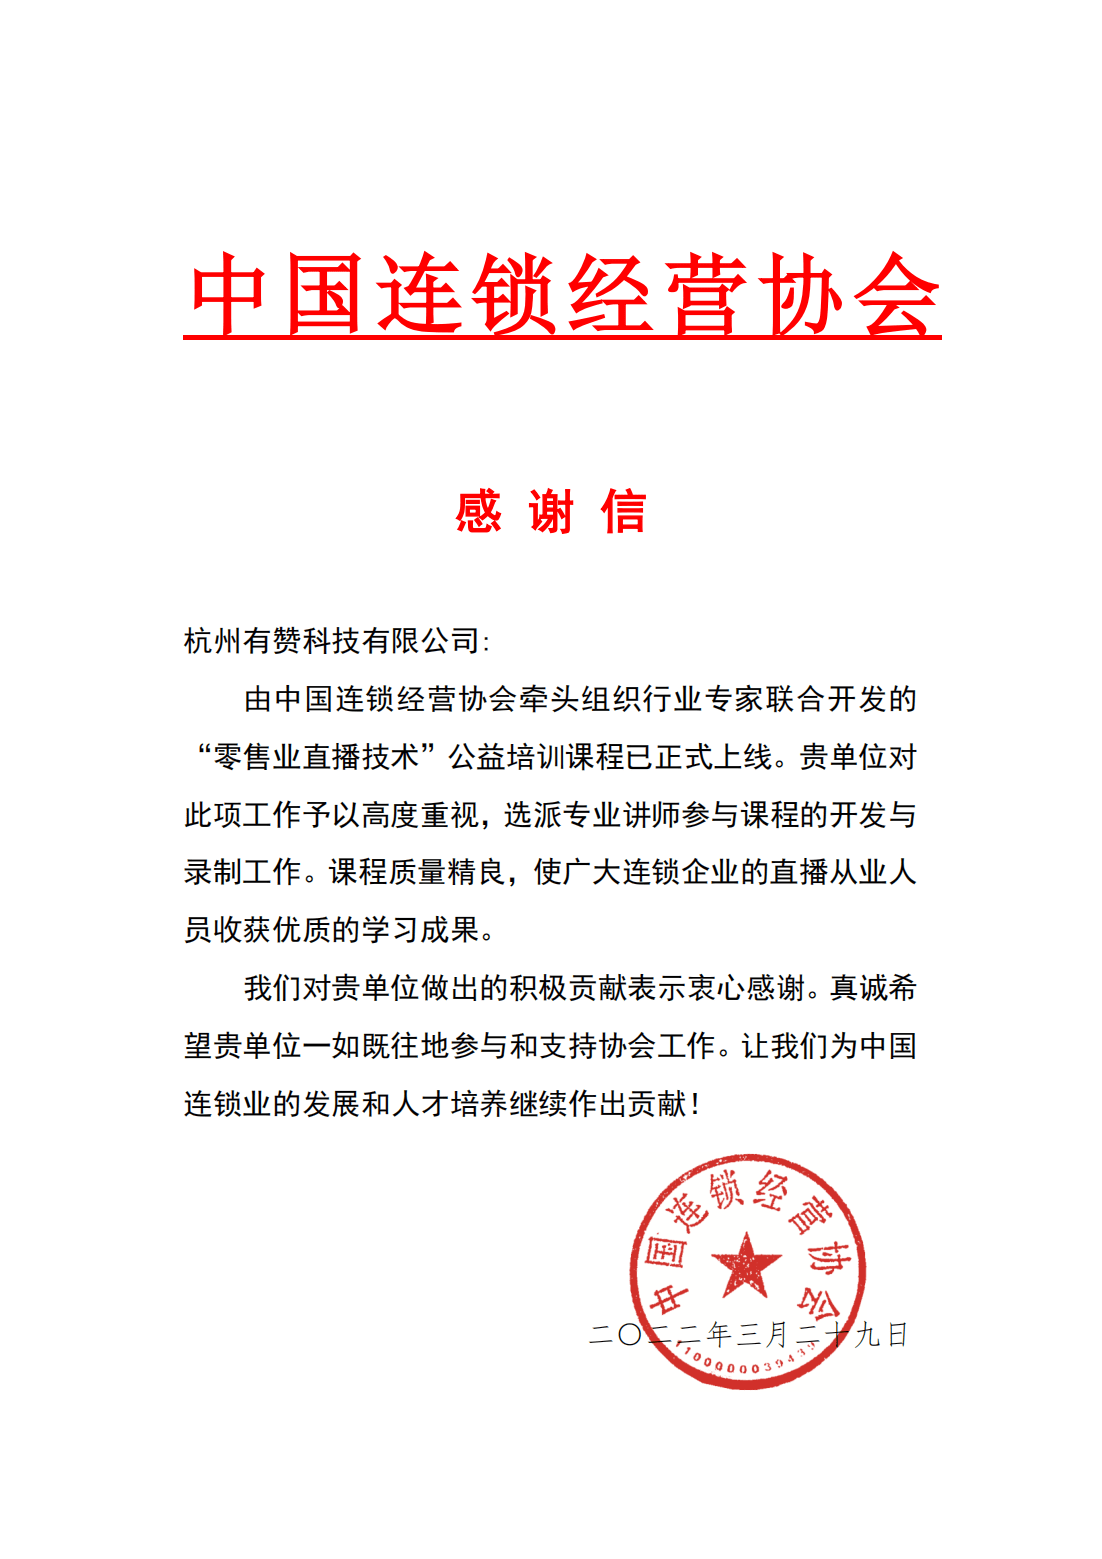 感谢中国连锁经营协会(ccfa)对有赞专家团的认可